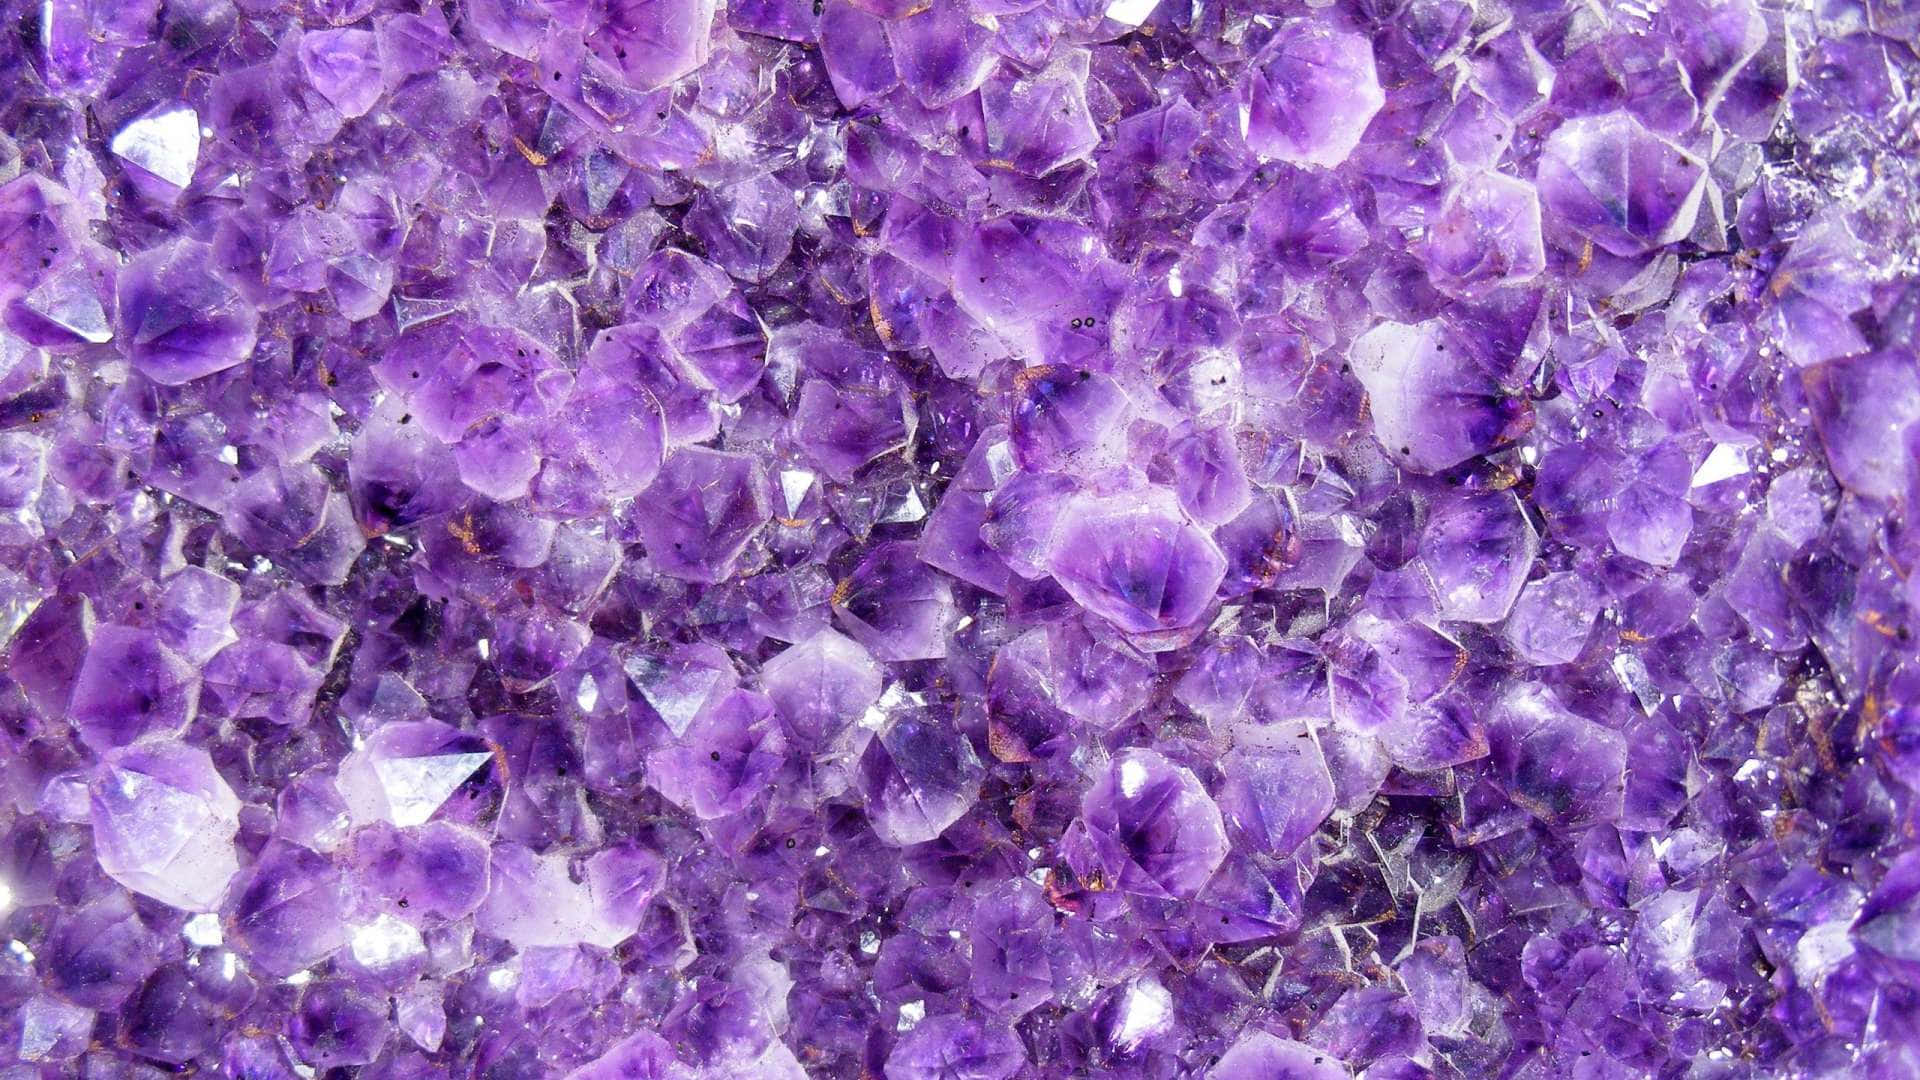 Chiêm ngưỡng những bức ảnh lilac wallpaper ungu đầy đủ sức cuốn hút khiến bạn không thể rời mắt. Họ có thể làm cho không gian của bạn trở nên đẹp hơn và mang lại cảm hứng cho bạn trong cuộc sống.